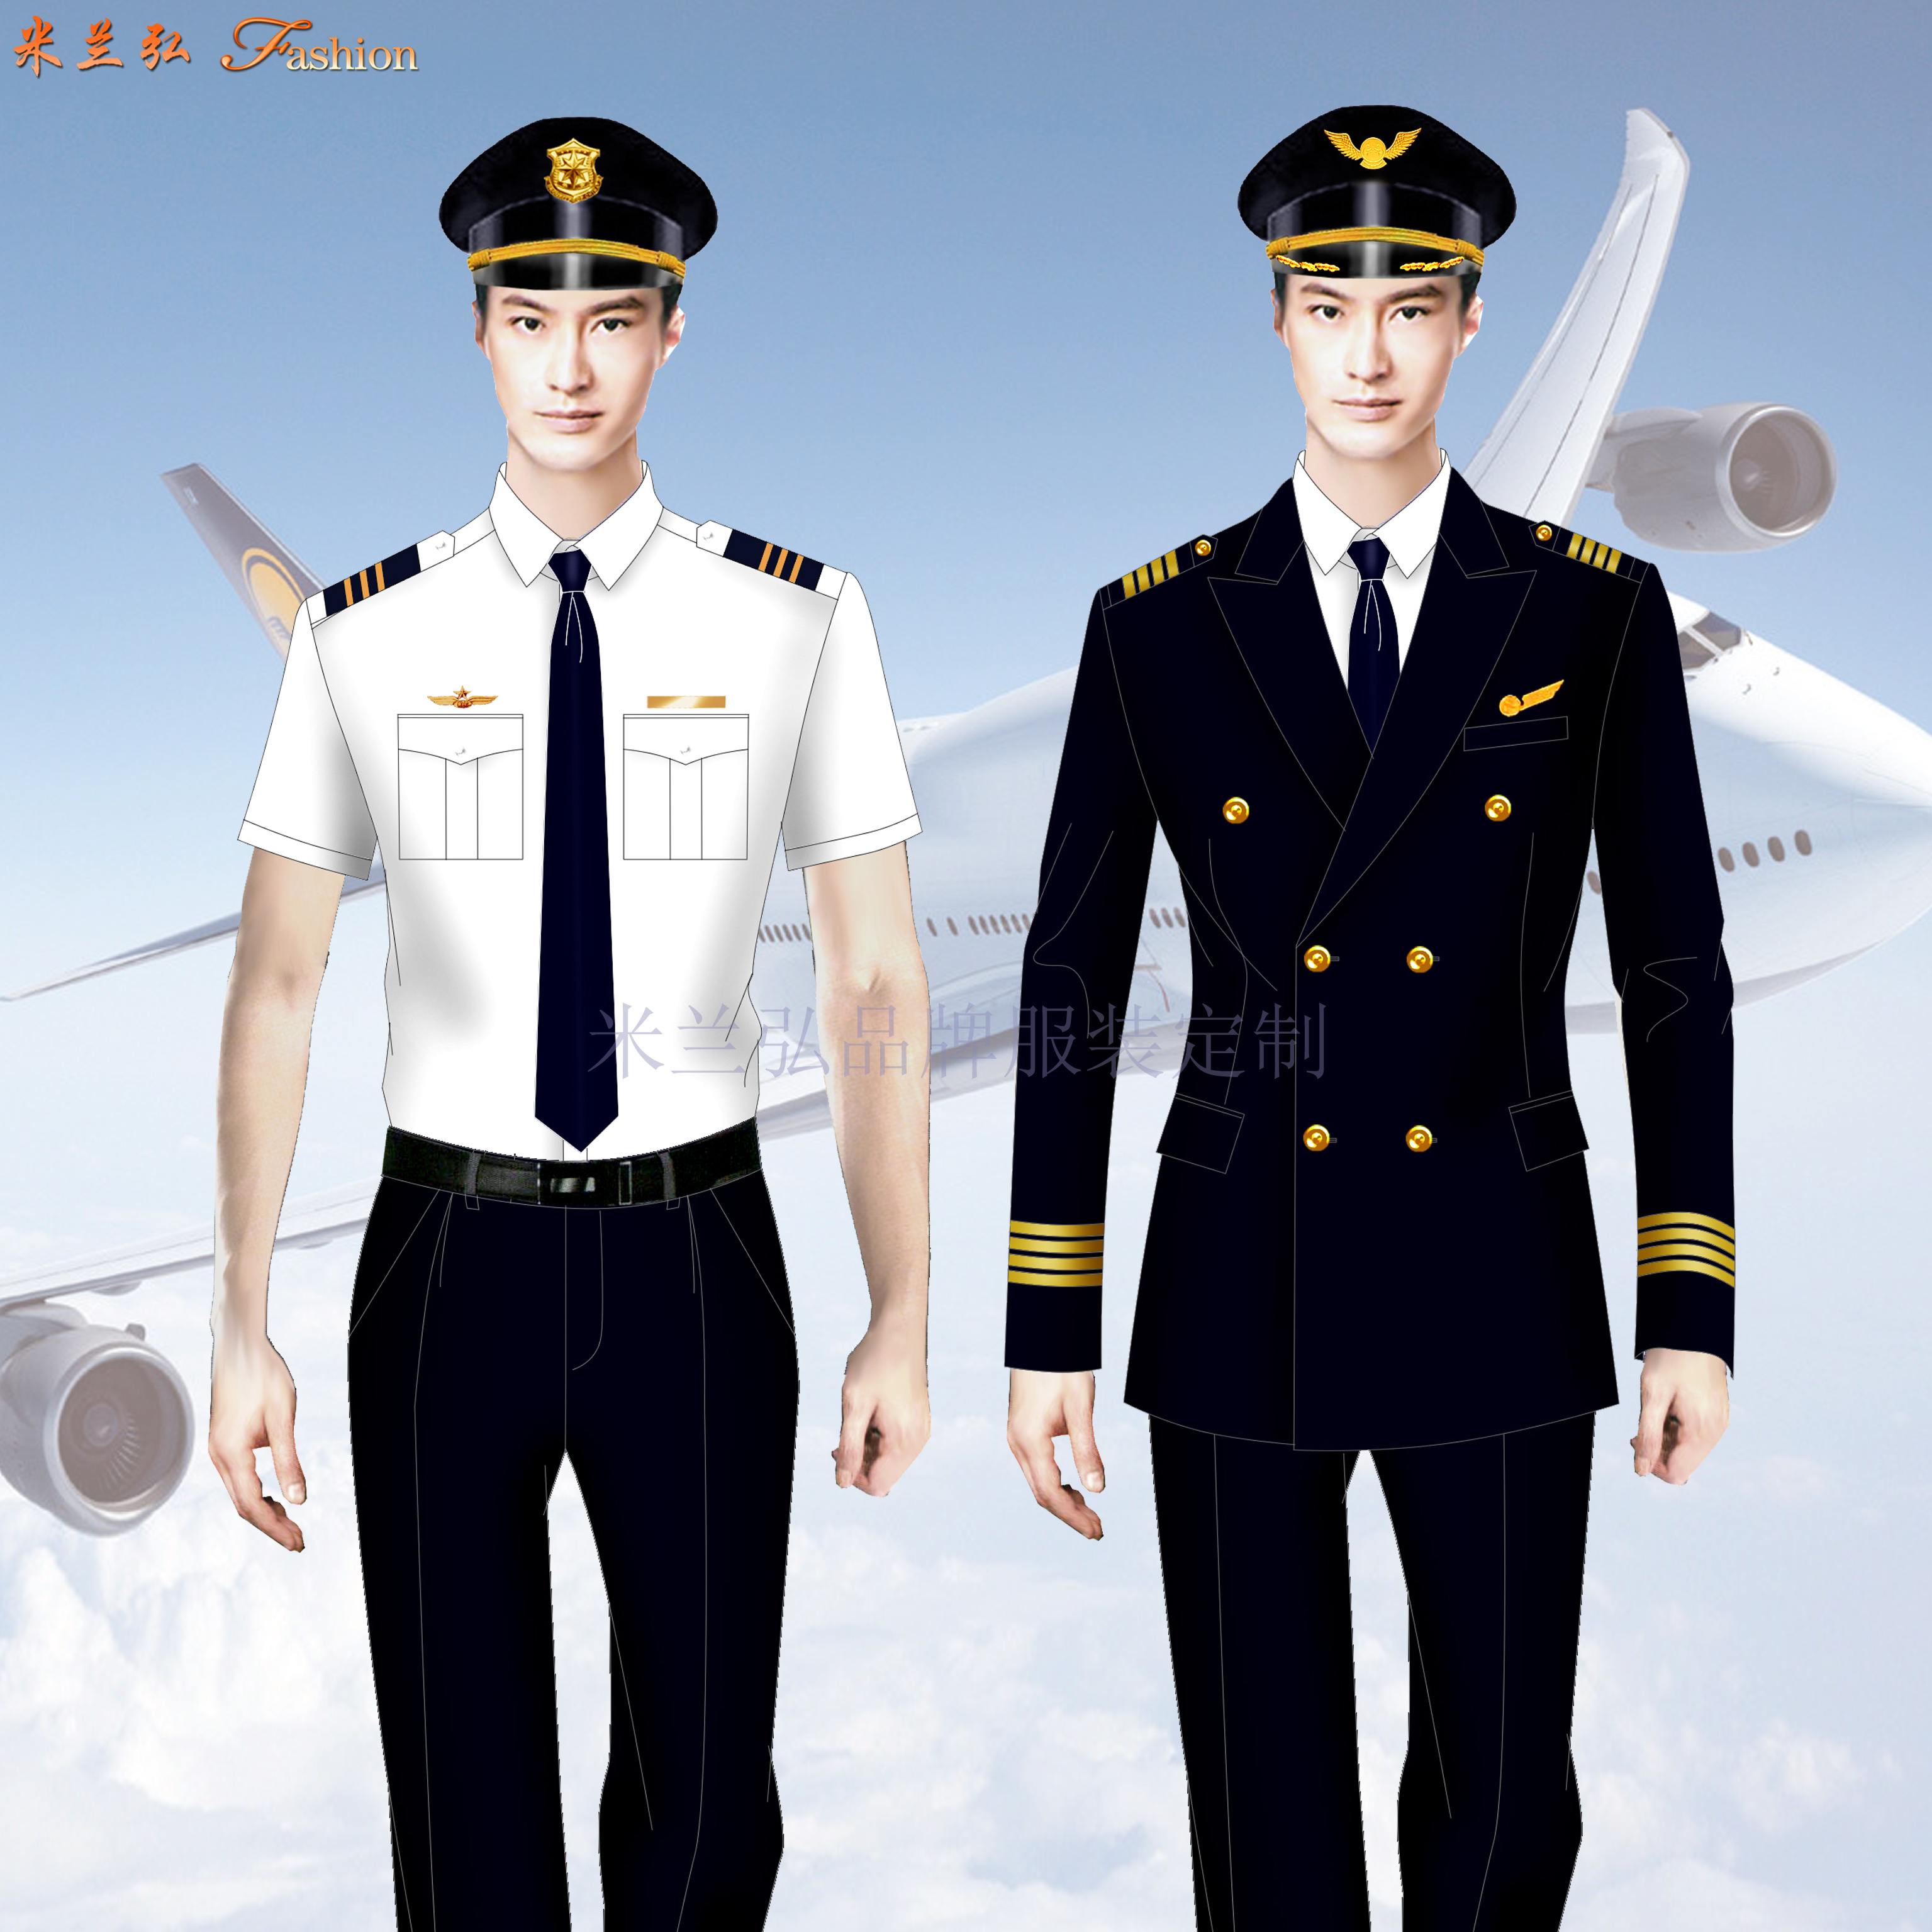 天津航空2023年首批23名“准空姐空少”开训 全年计划引进超400人 - 民用航空网